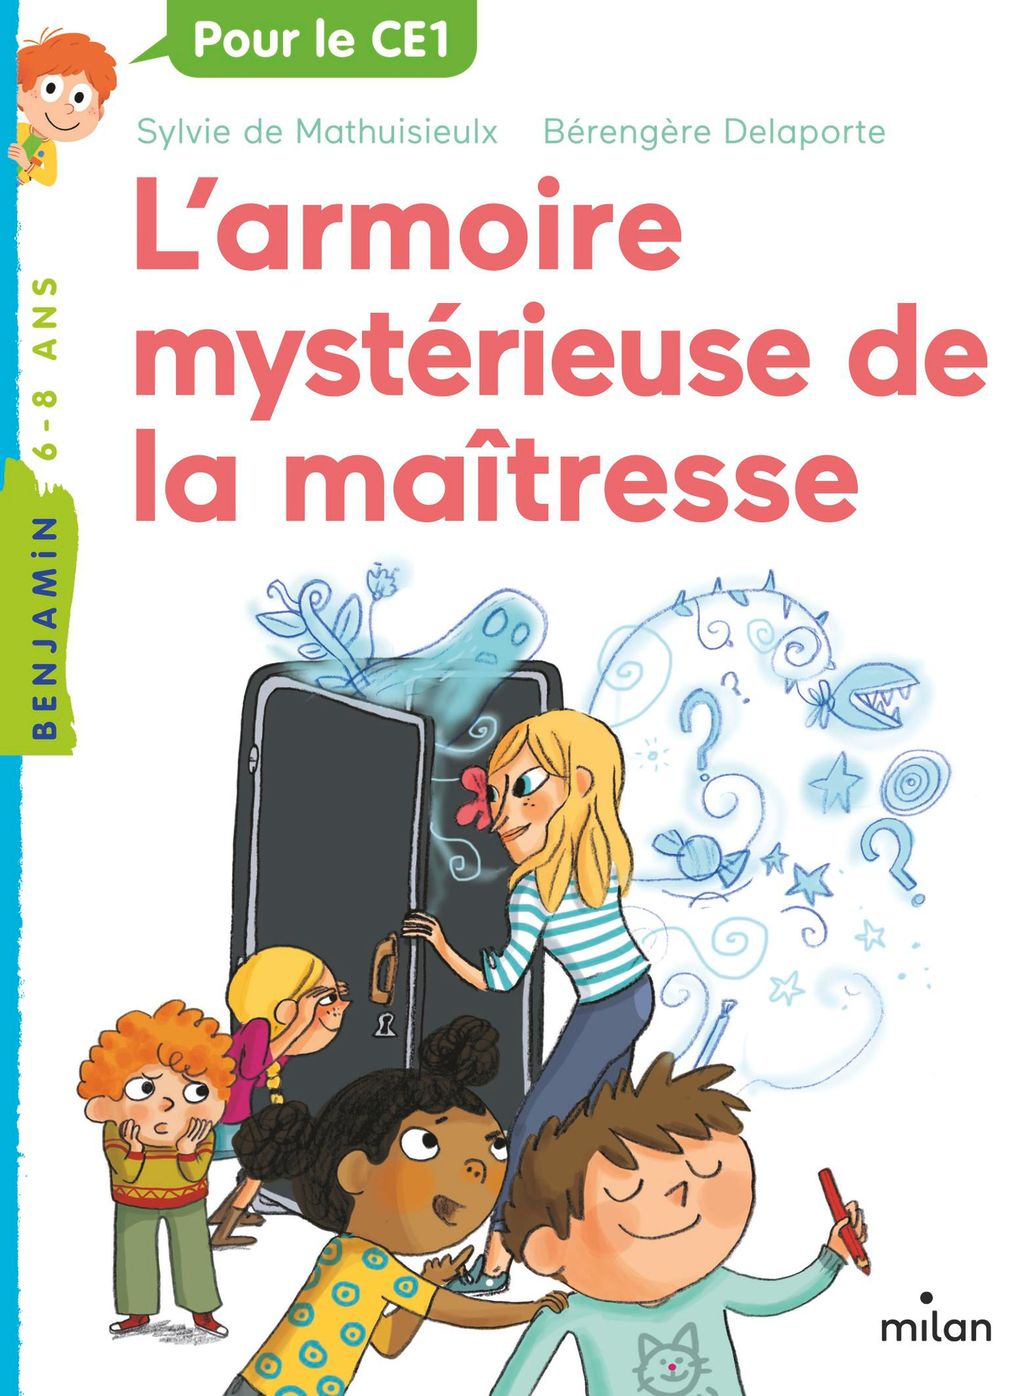 « L’armoire mystérieuse de la maîtresse » cover